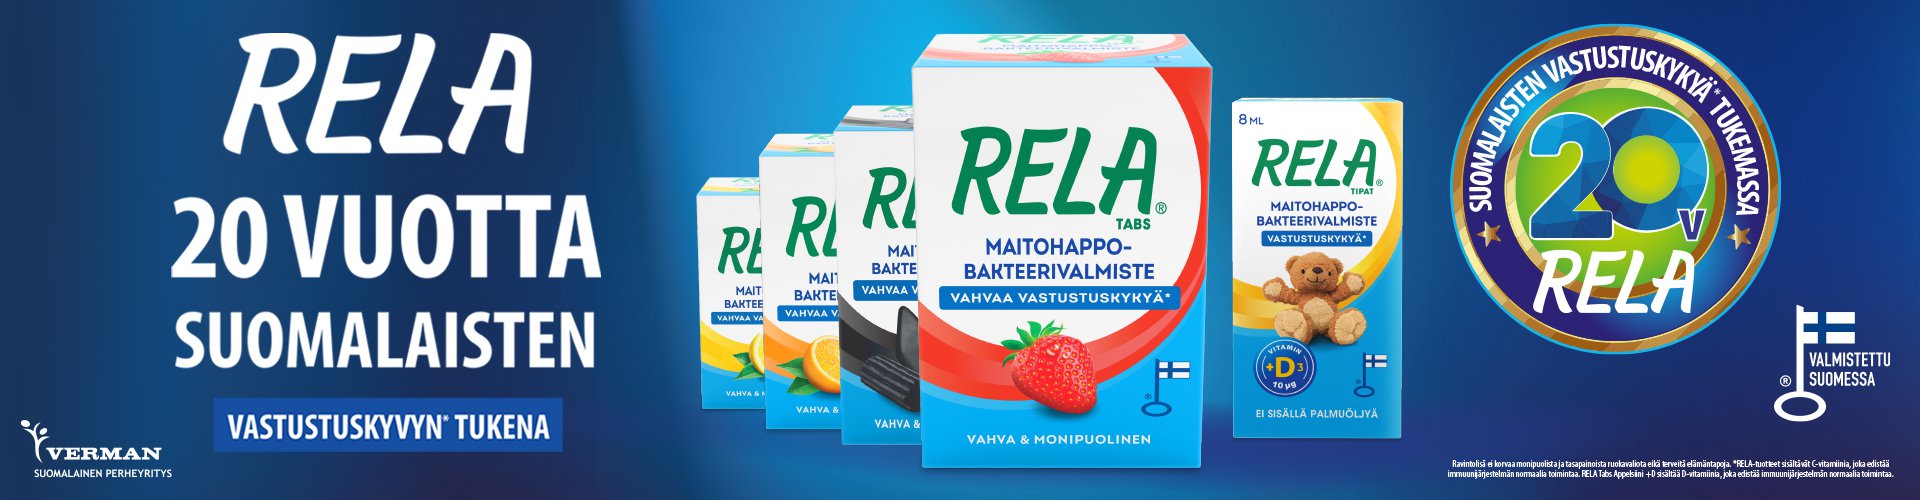 Koko perheen Rela-maitohappobakteerit sopivat päivittäiseen käyttöön. Rela-tuotteiden sisältämä C-vitamiini edistää immuunijärjestelmän normaalia toimintaa.